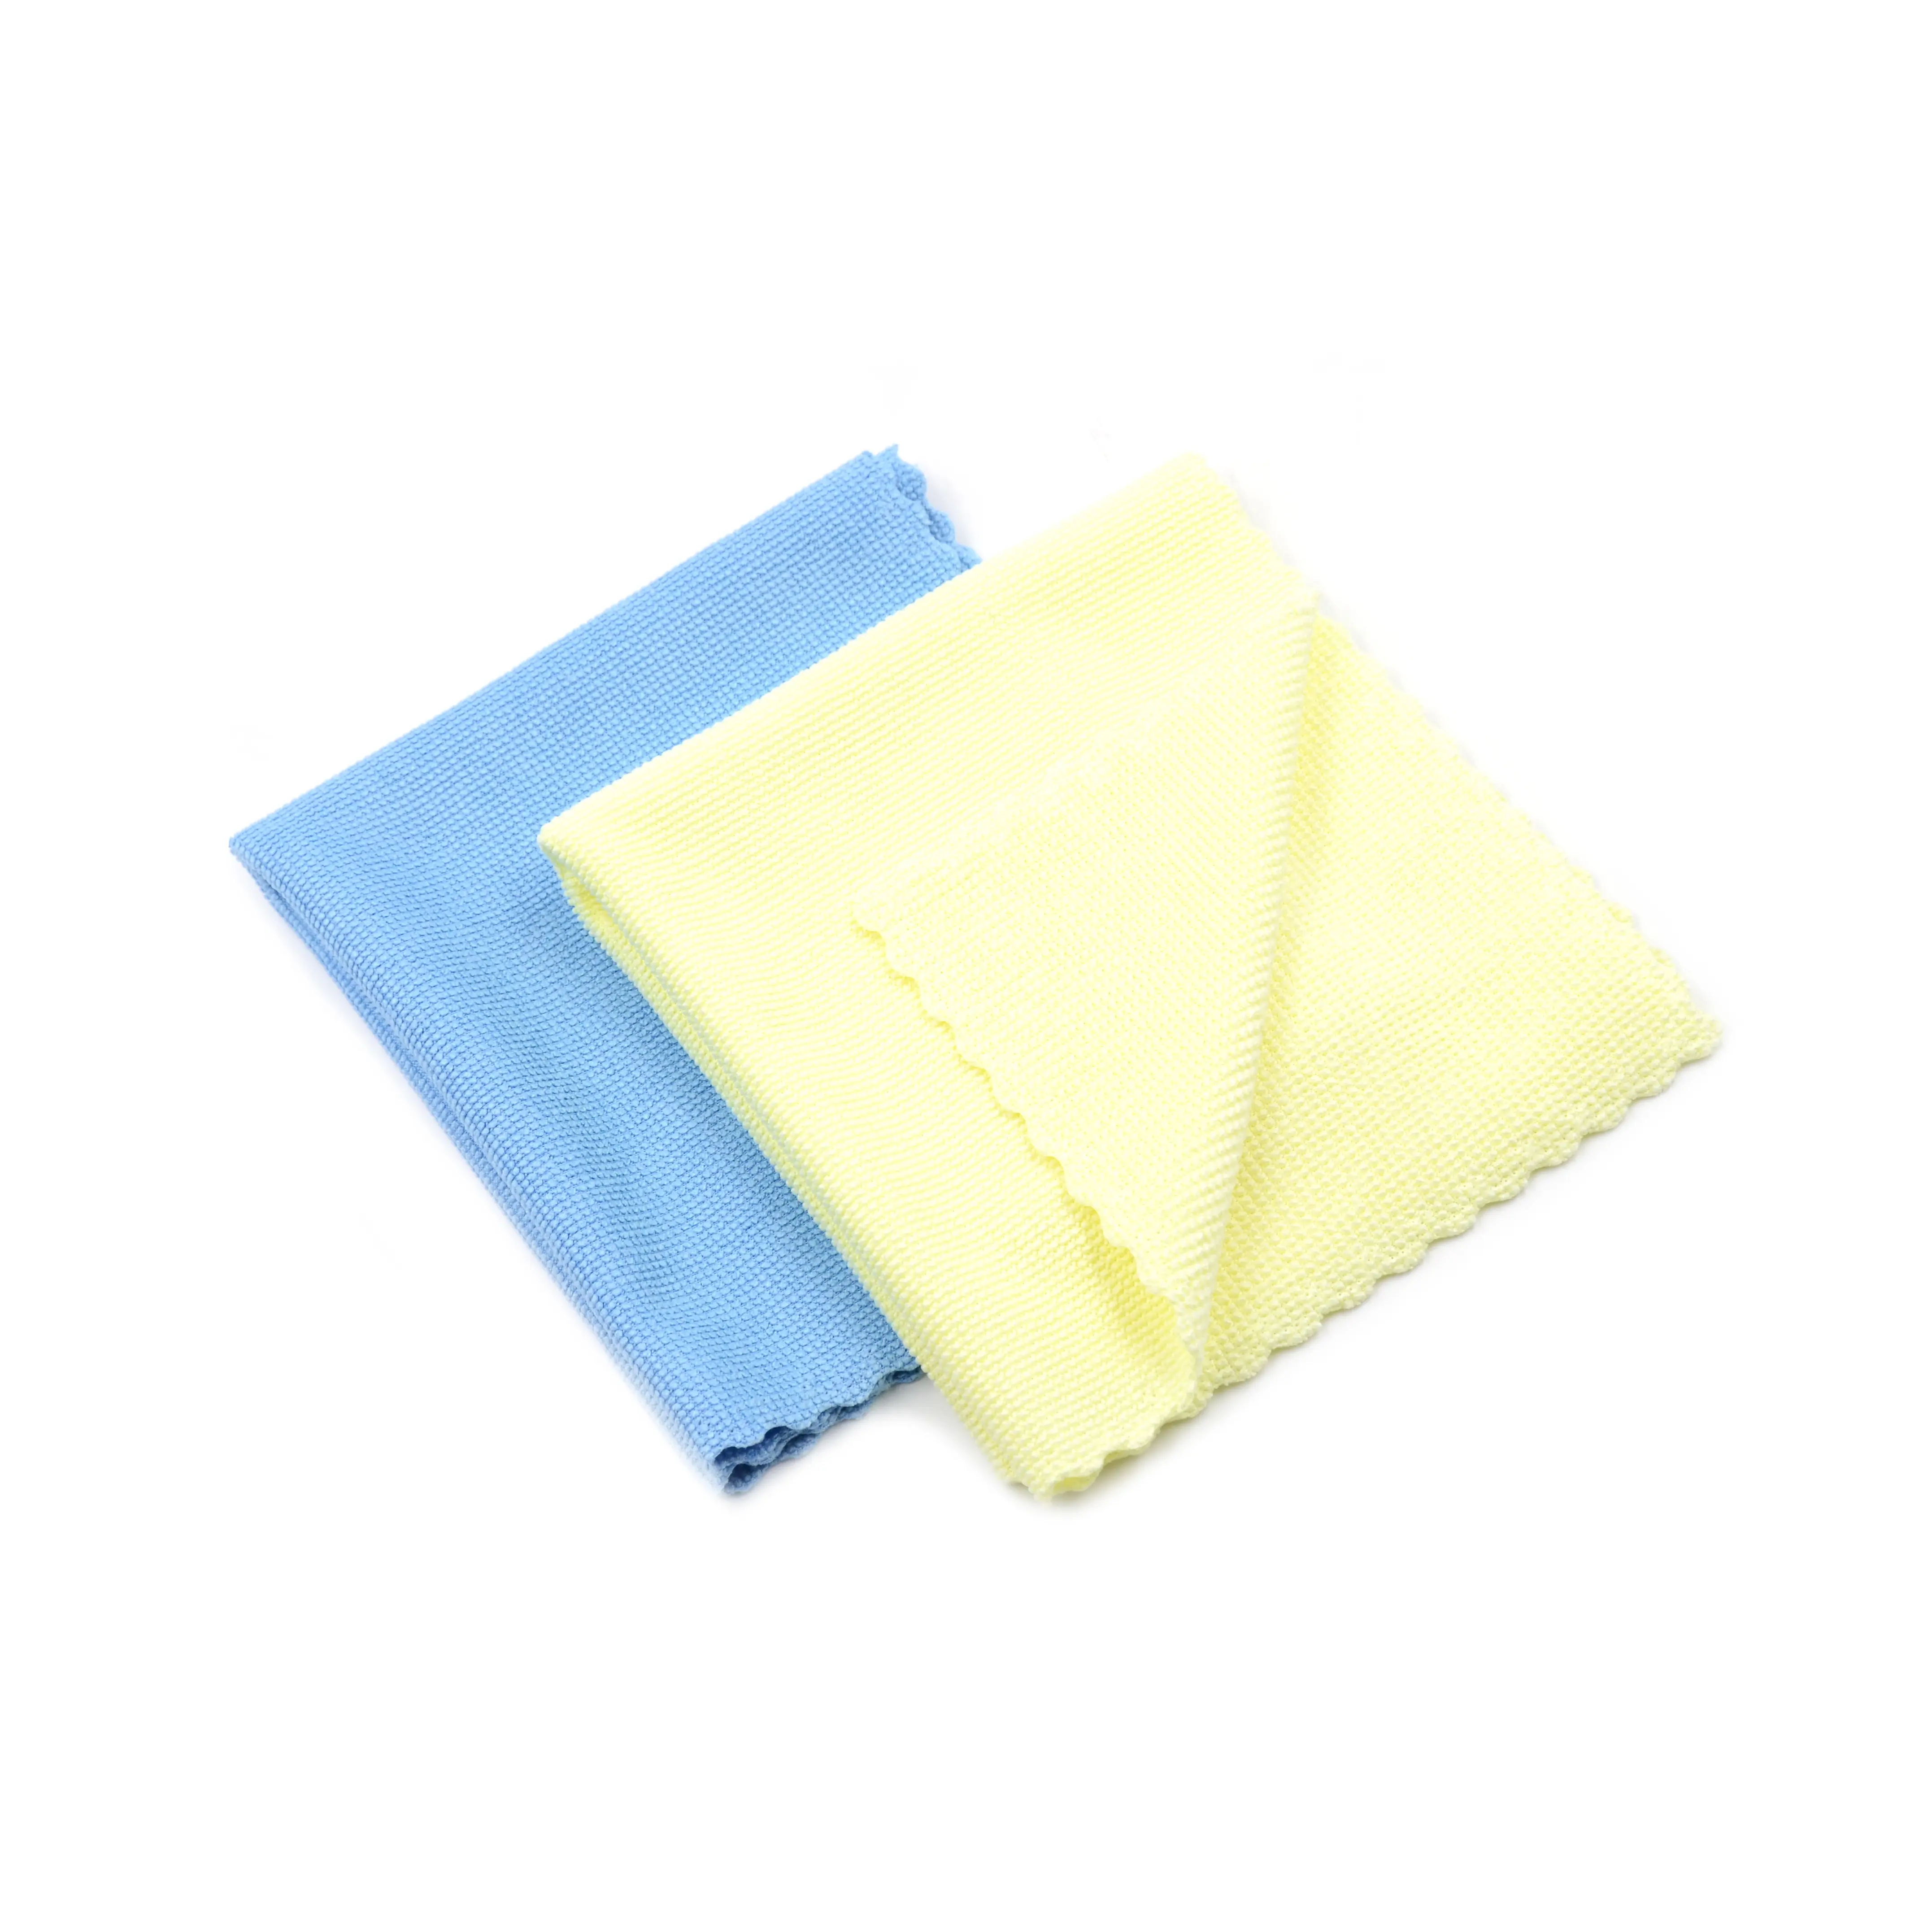 Blaues und gelbes Spitzen rand 3M Mikro faser magisches Reinigungs tuch für digitale Produkte